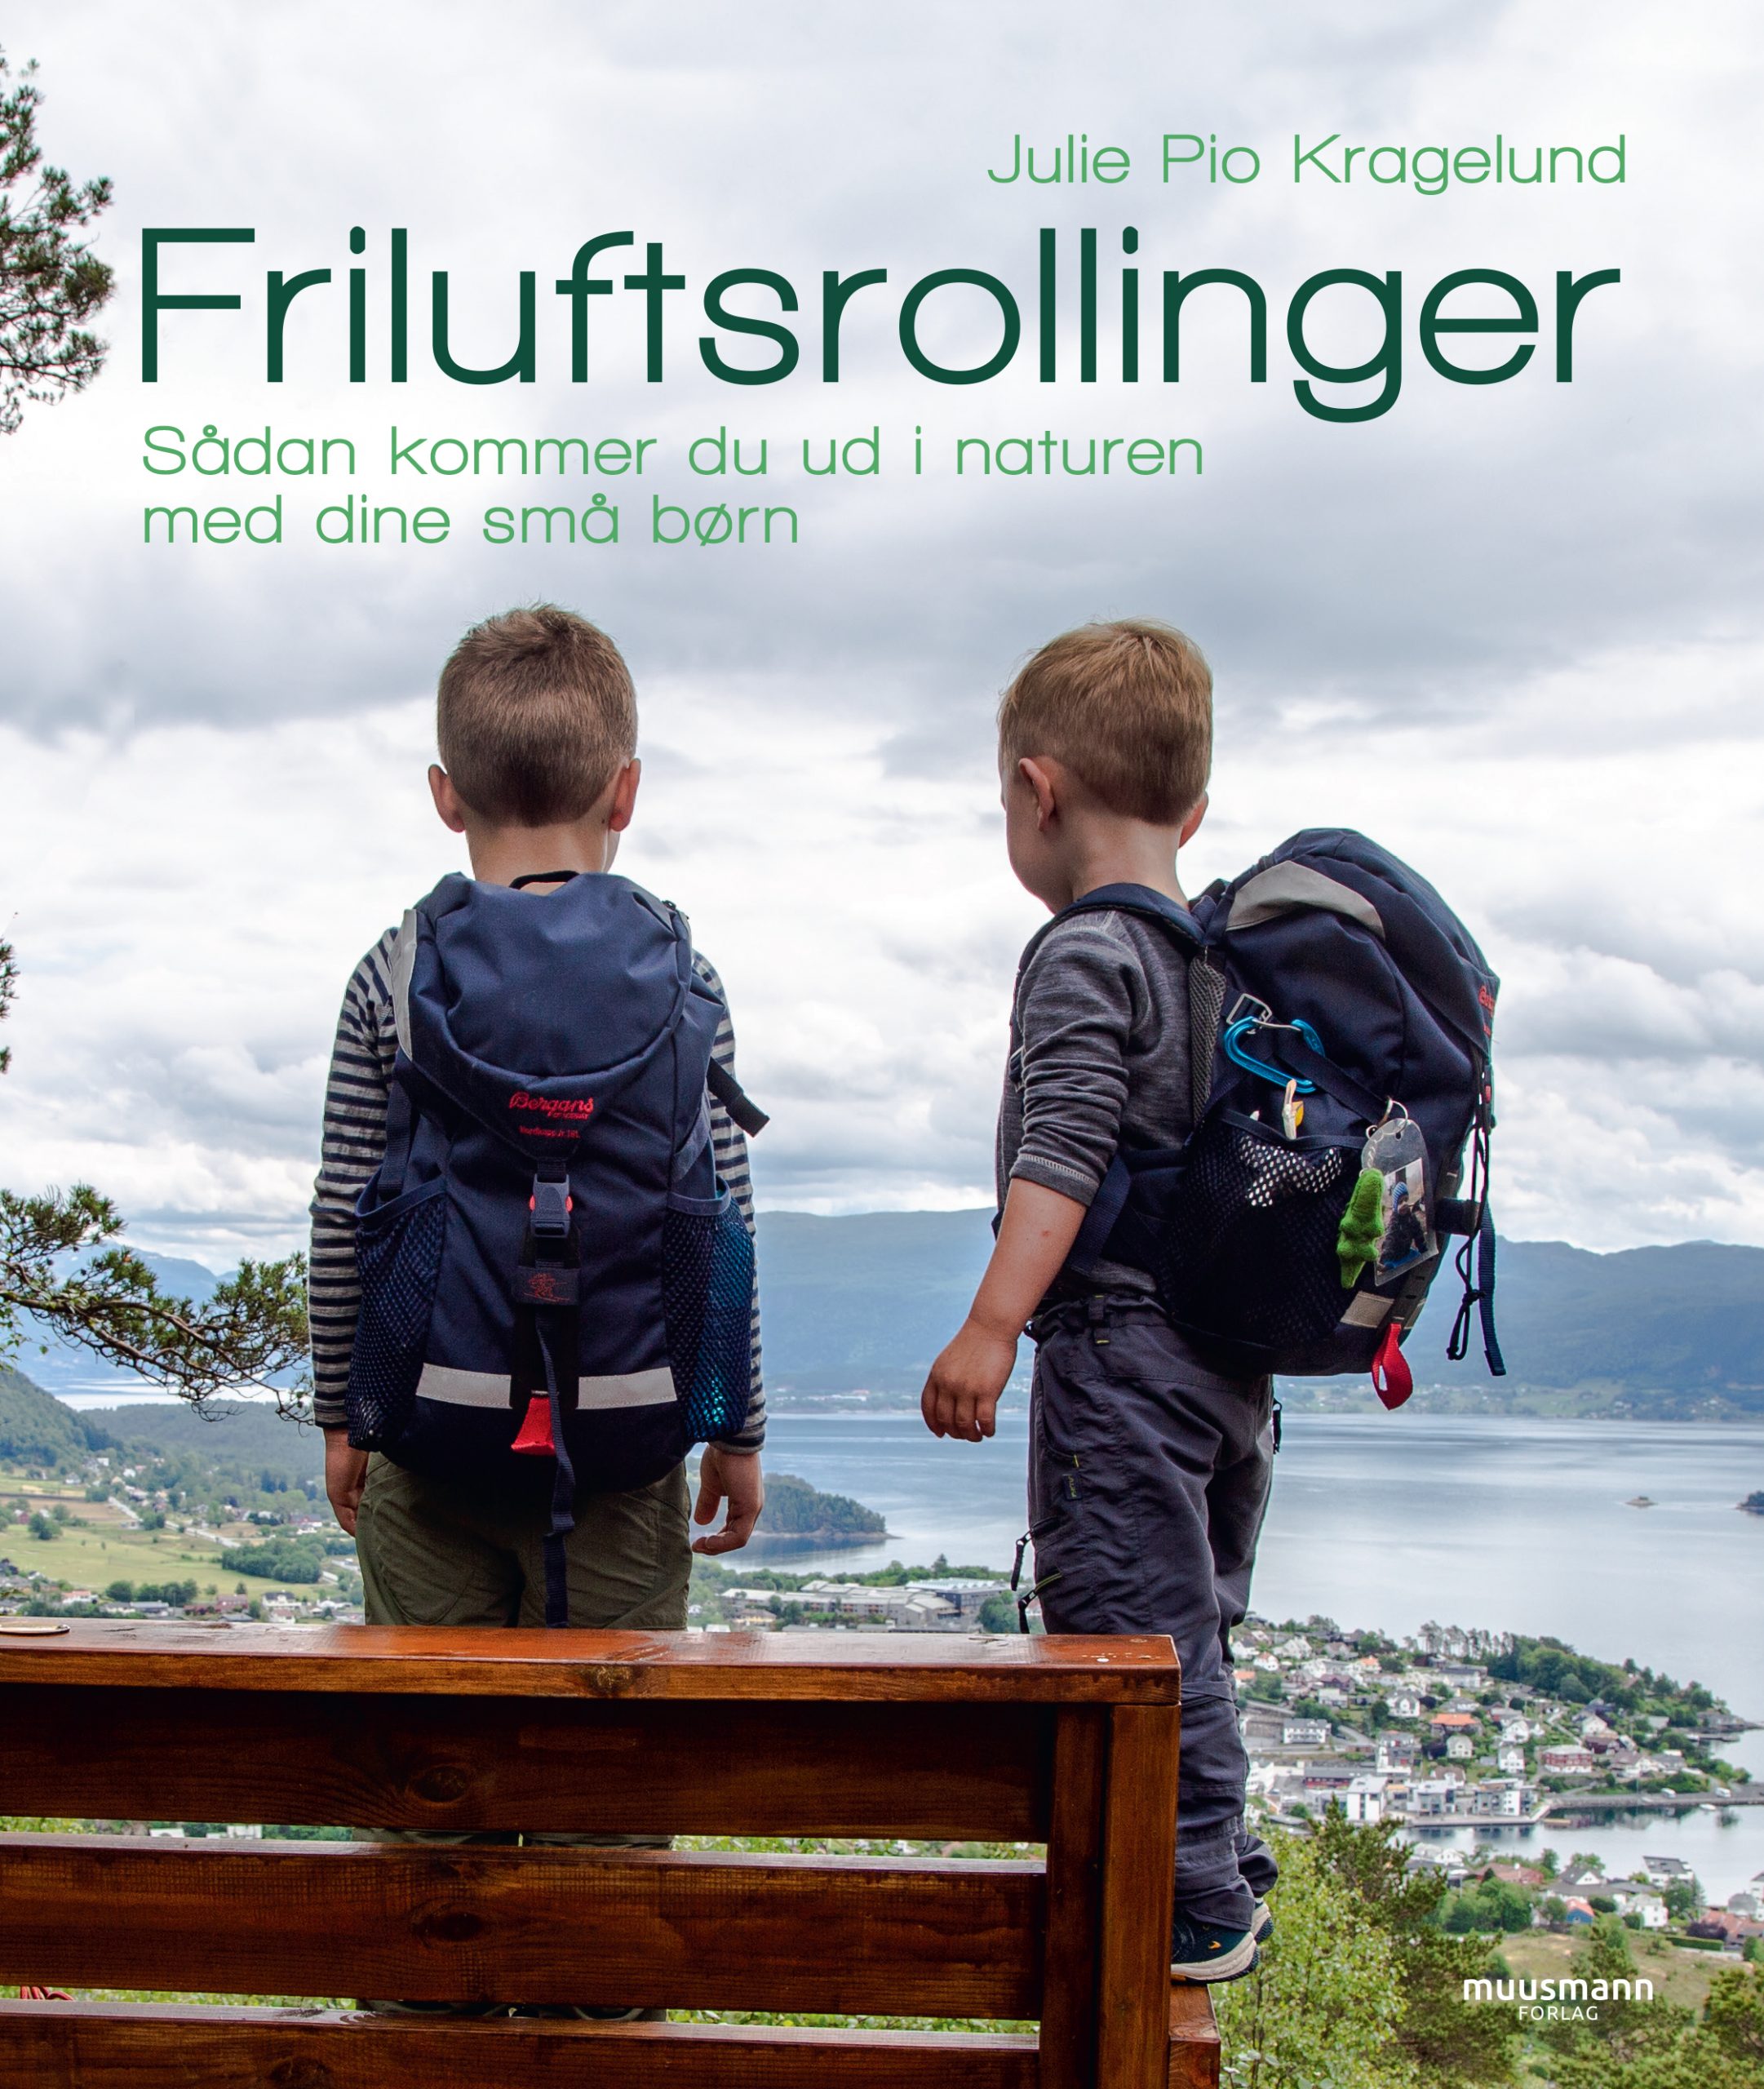 Friluftsrollinger Sådan kommer du ud i naturen med dine små børn af Julie Pio Kragelund, bøger til efterårsferien og friluftsliv, Muusmann Forlag